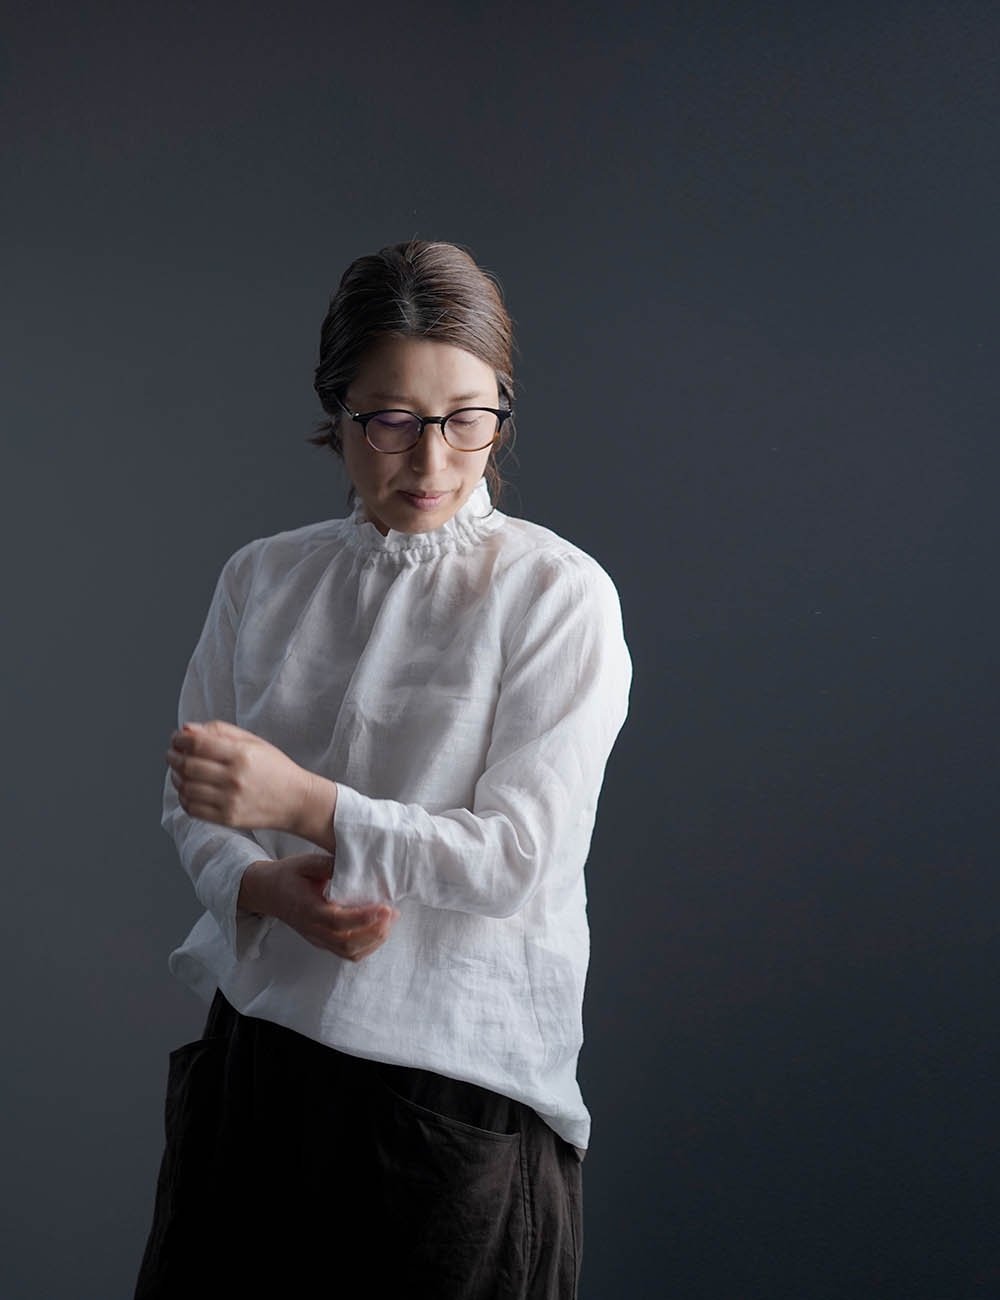 【wafu】雅亜麻 Linen  Top   タートル ネック インナー  袖スリット コーデの幅が広く万能に使えます。/白色 p014a-wht1